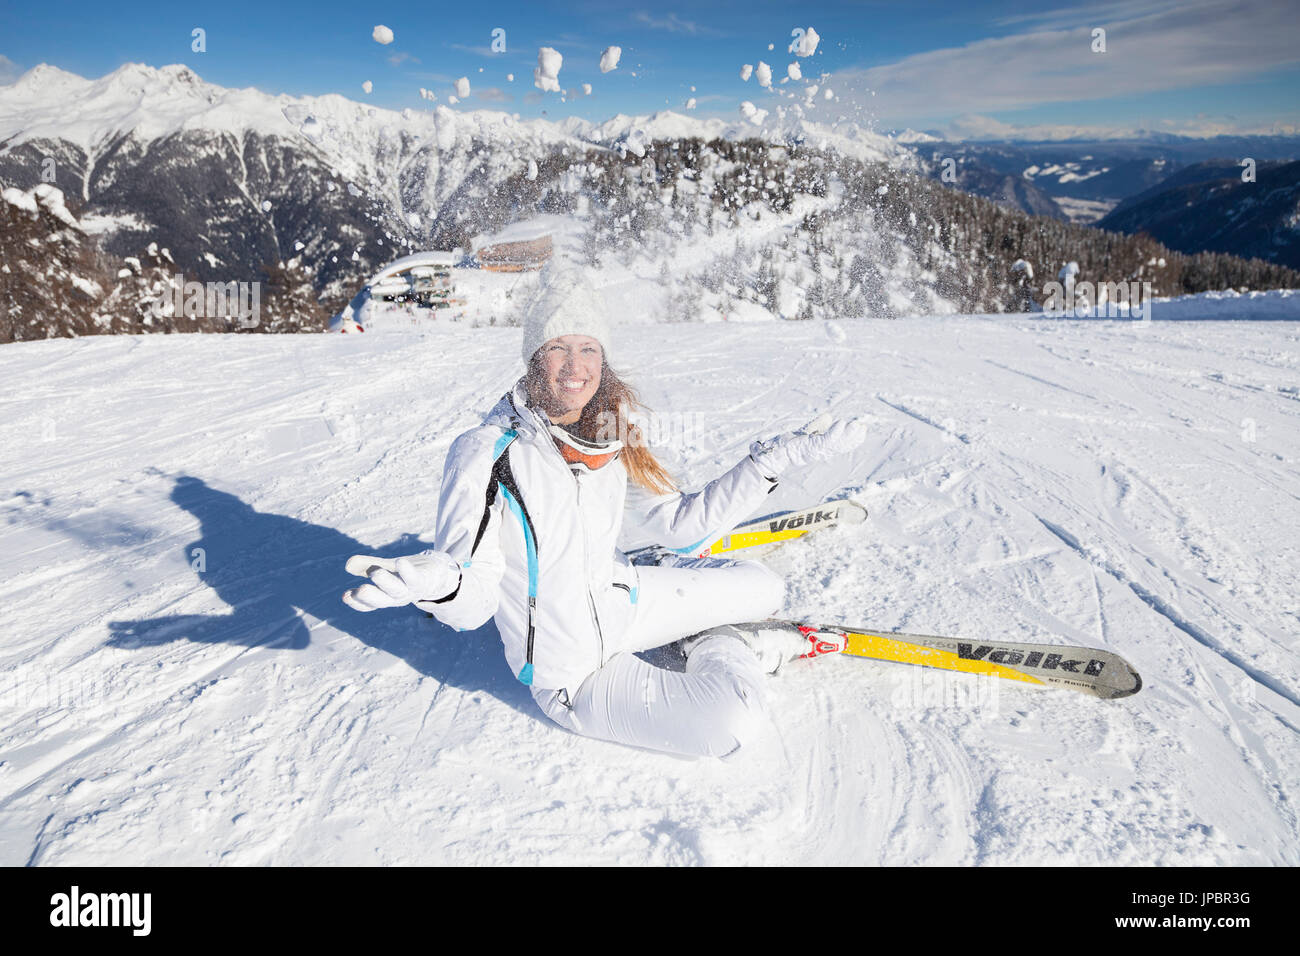 Bellissima ragazza con la sci è giocare con neve fresca lungo le piste di Marilleva, provincia di Trento, Trentino Alto Adige, Italia, Europa Foto Stock